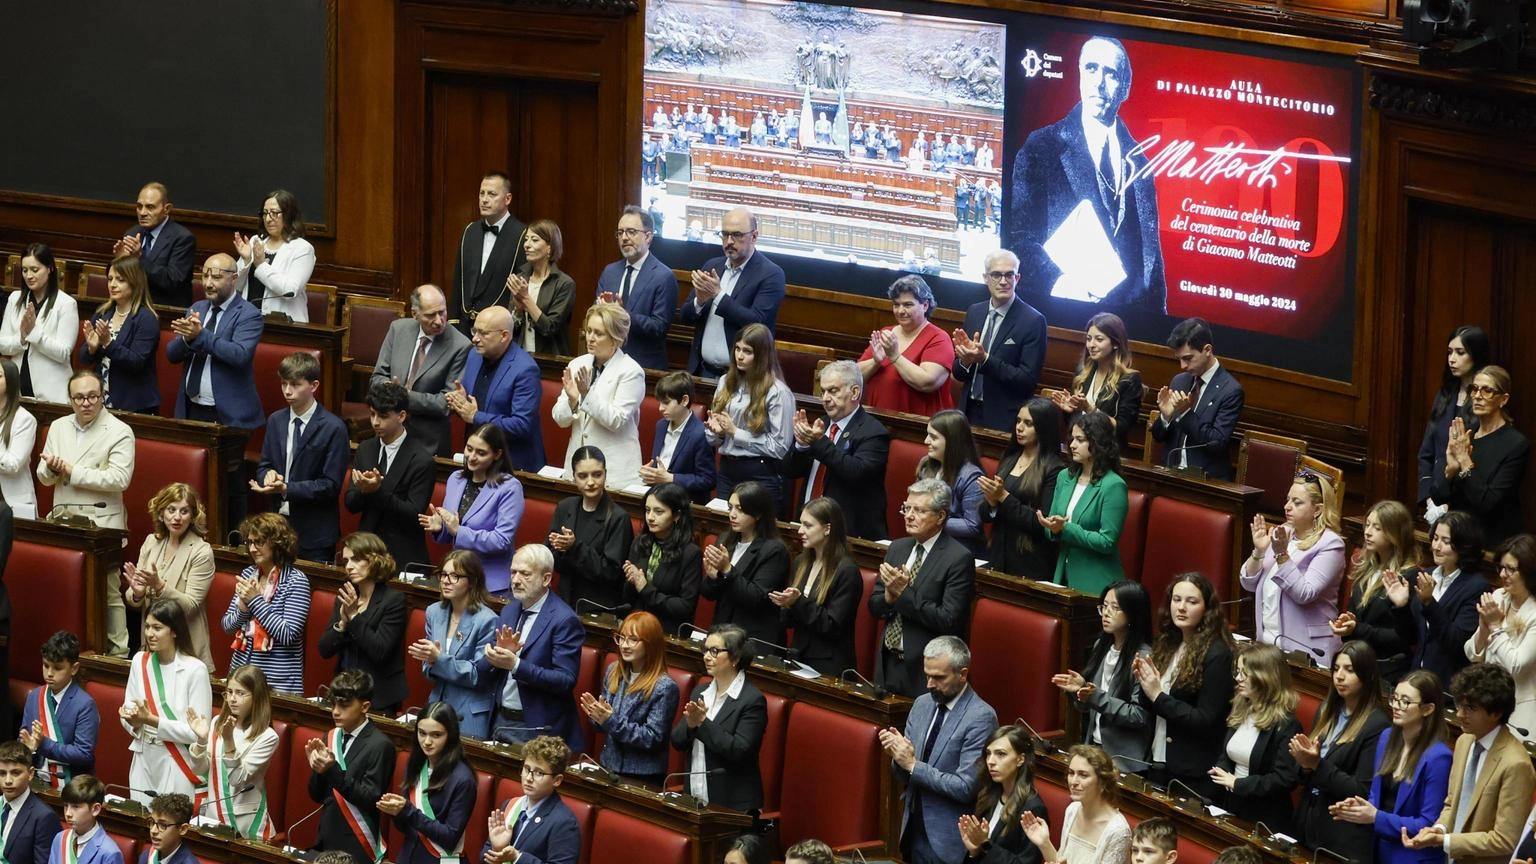 Commemorazione alla Camera del discorso contro Mussolini del 30 maggio 1924. La premier: "Vittima dello squadrismo". Lo scranno del socialista non sarà più occupato.